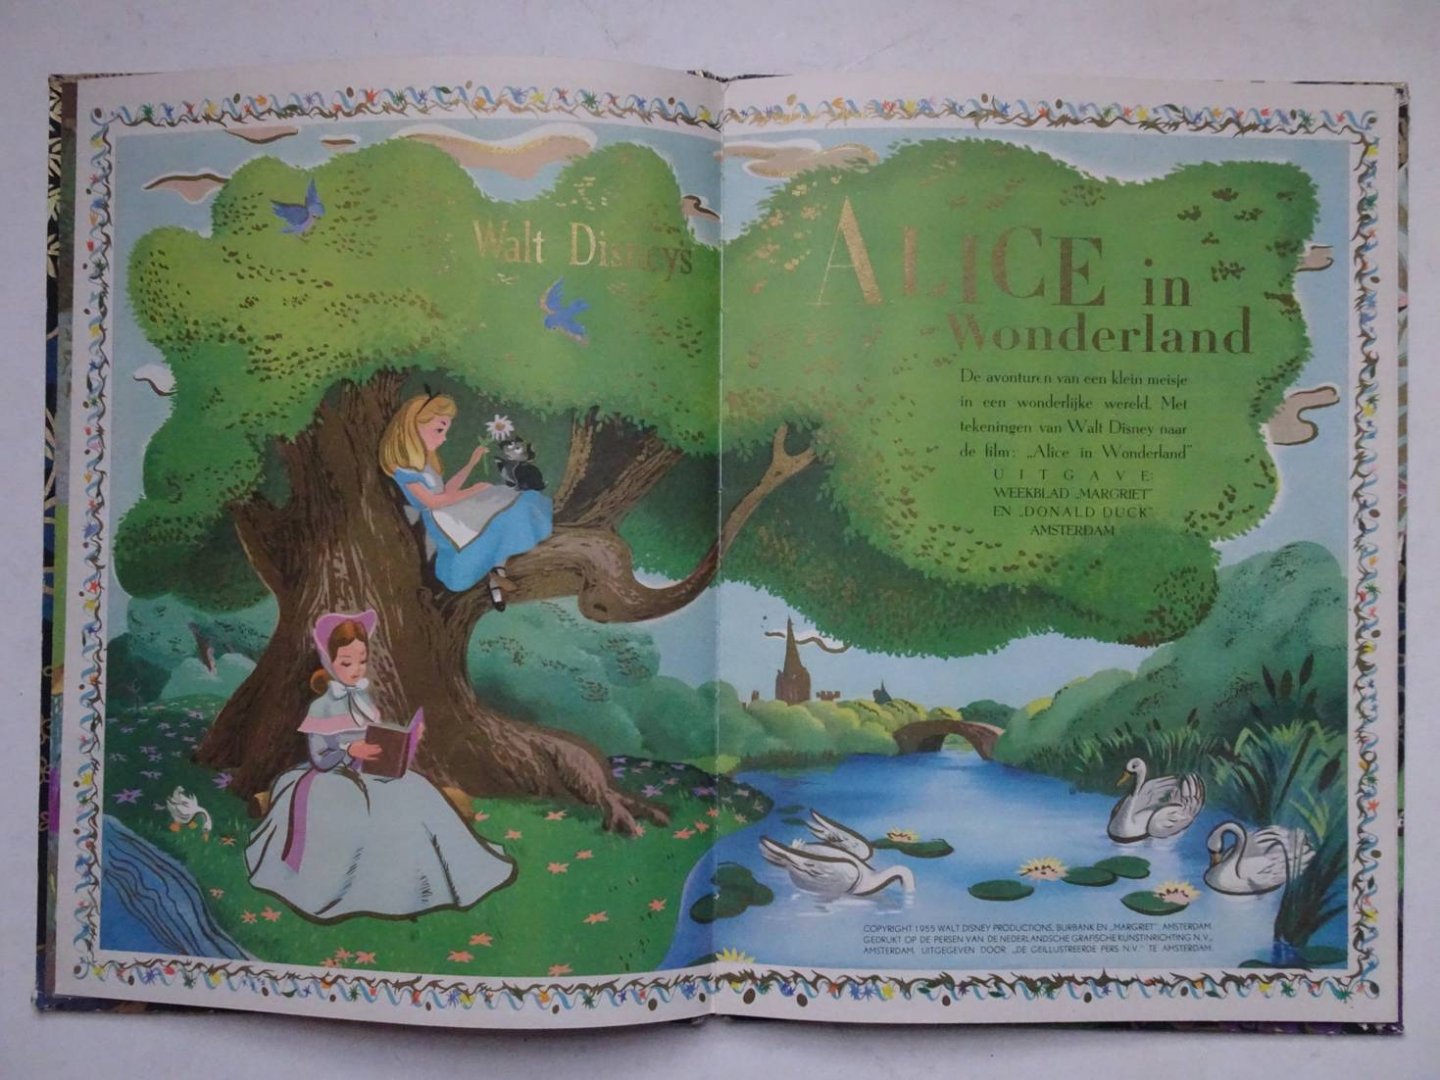 Disney, Walt. - Walt Disney's Alice in Wonderland. De avonturen van een klein meisje in een wonderlijke wereld. Met tekeningen van Walt Disney naar de film: "Alice in Wonderland". Een gouden "Margriet" boek.